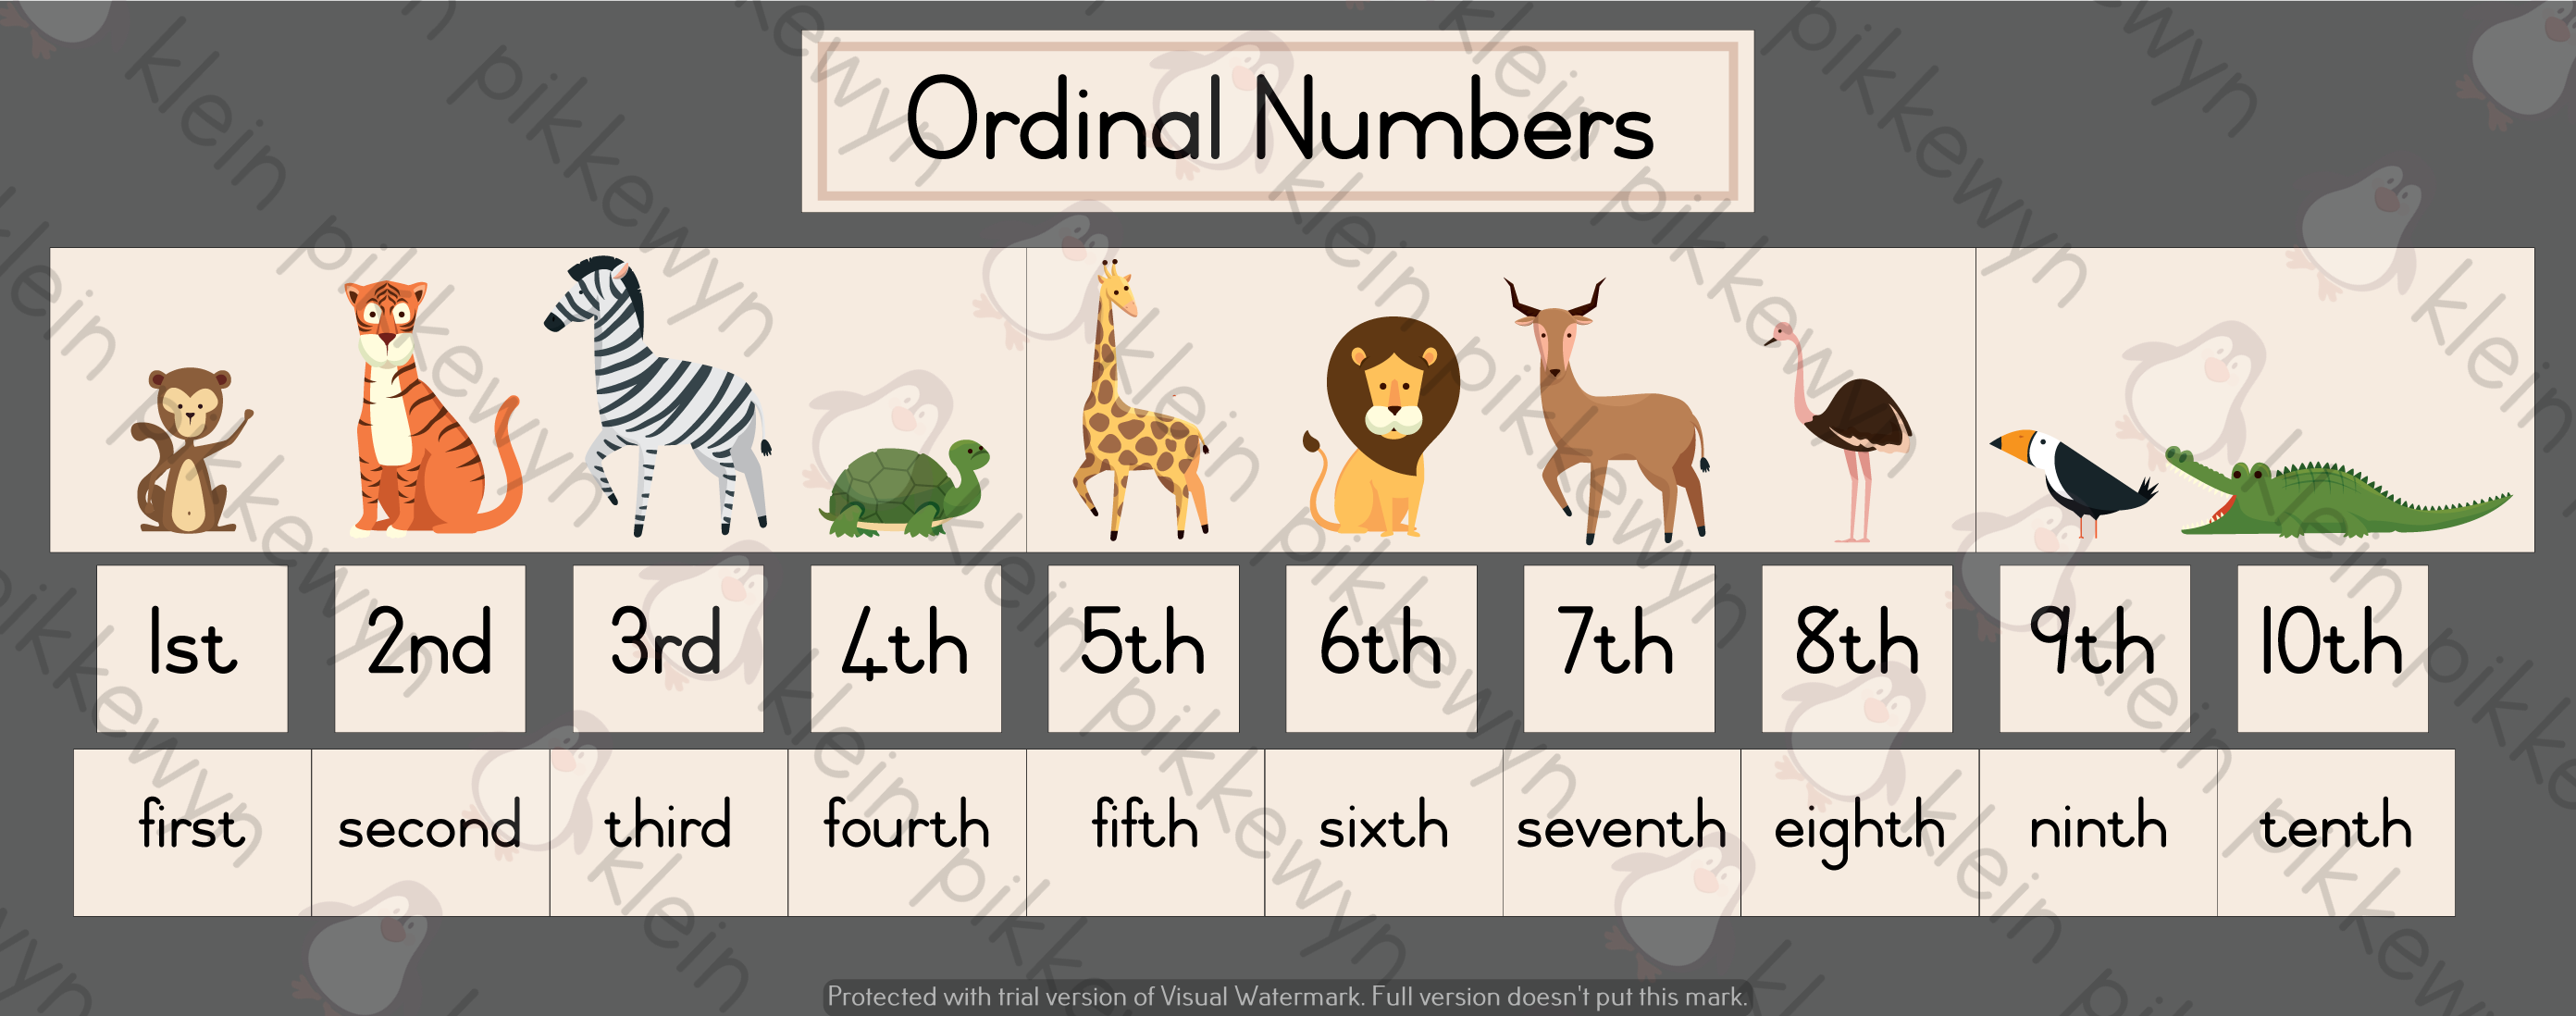 ordinal-numbers-animals-1-10-teacha